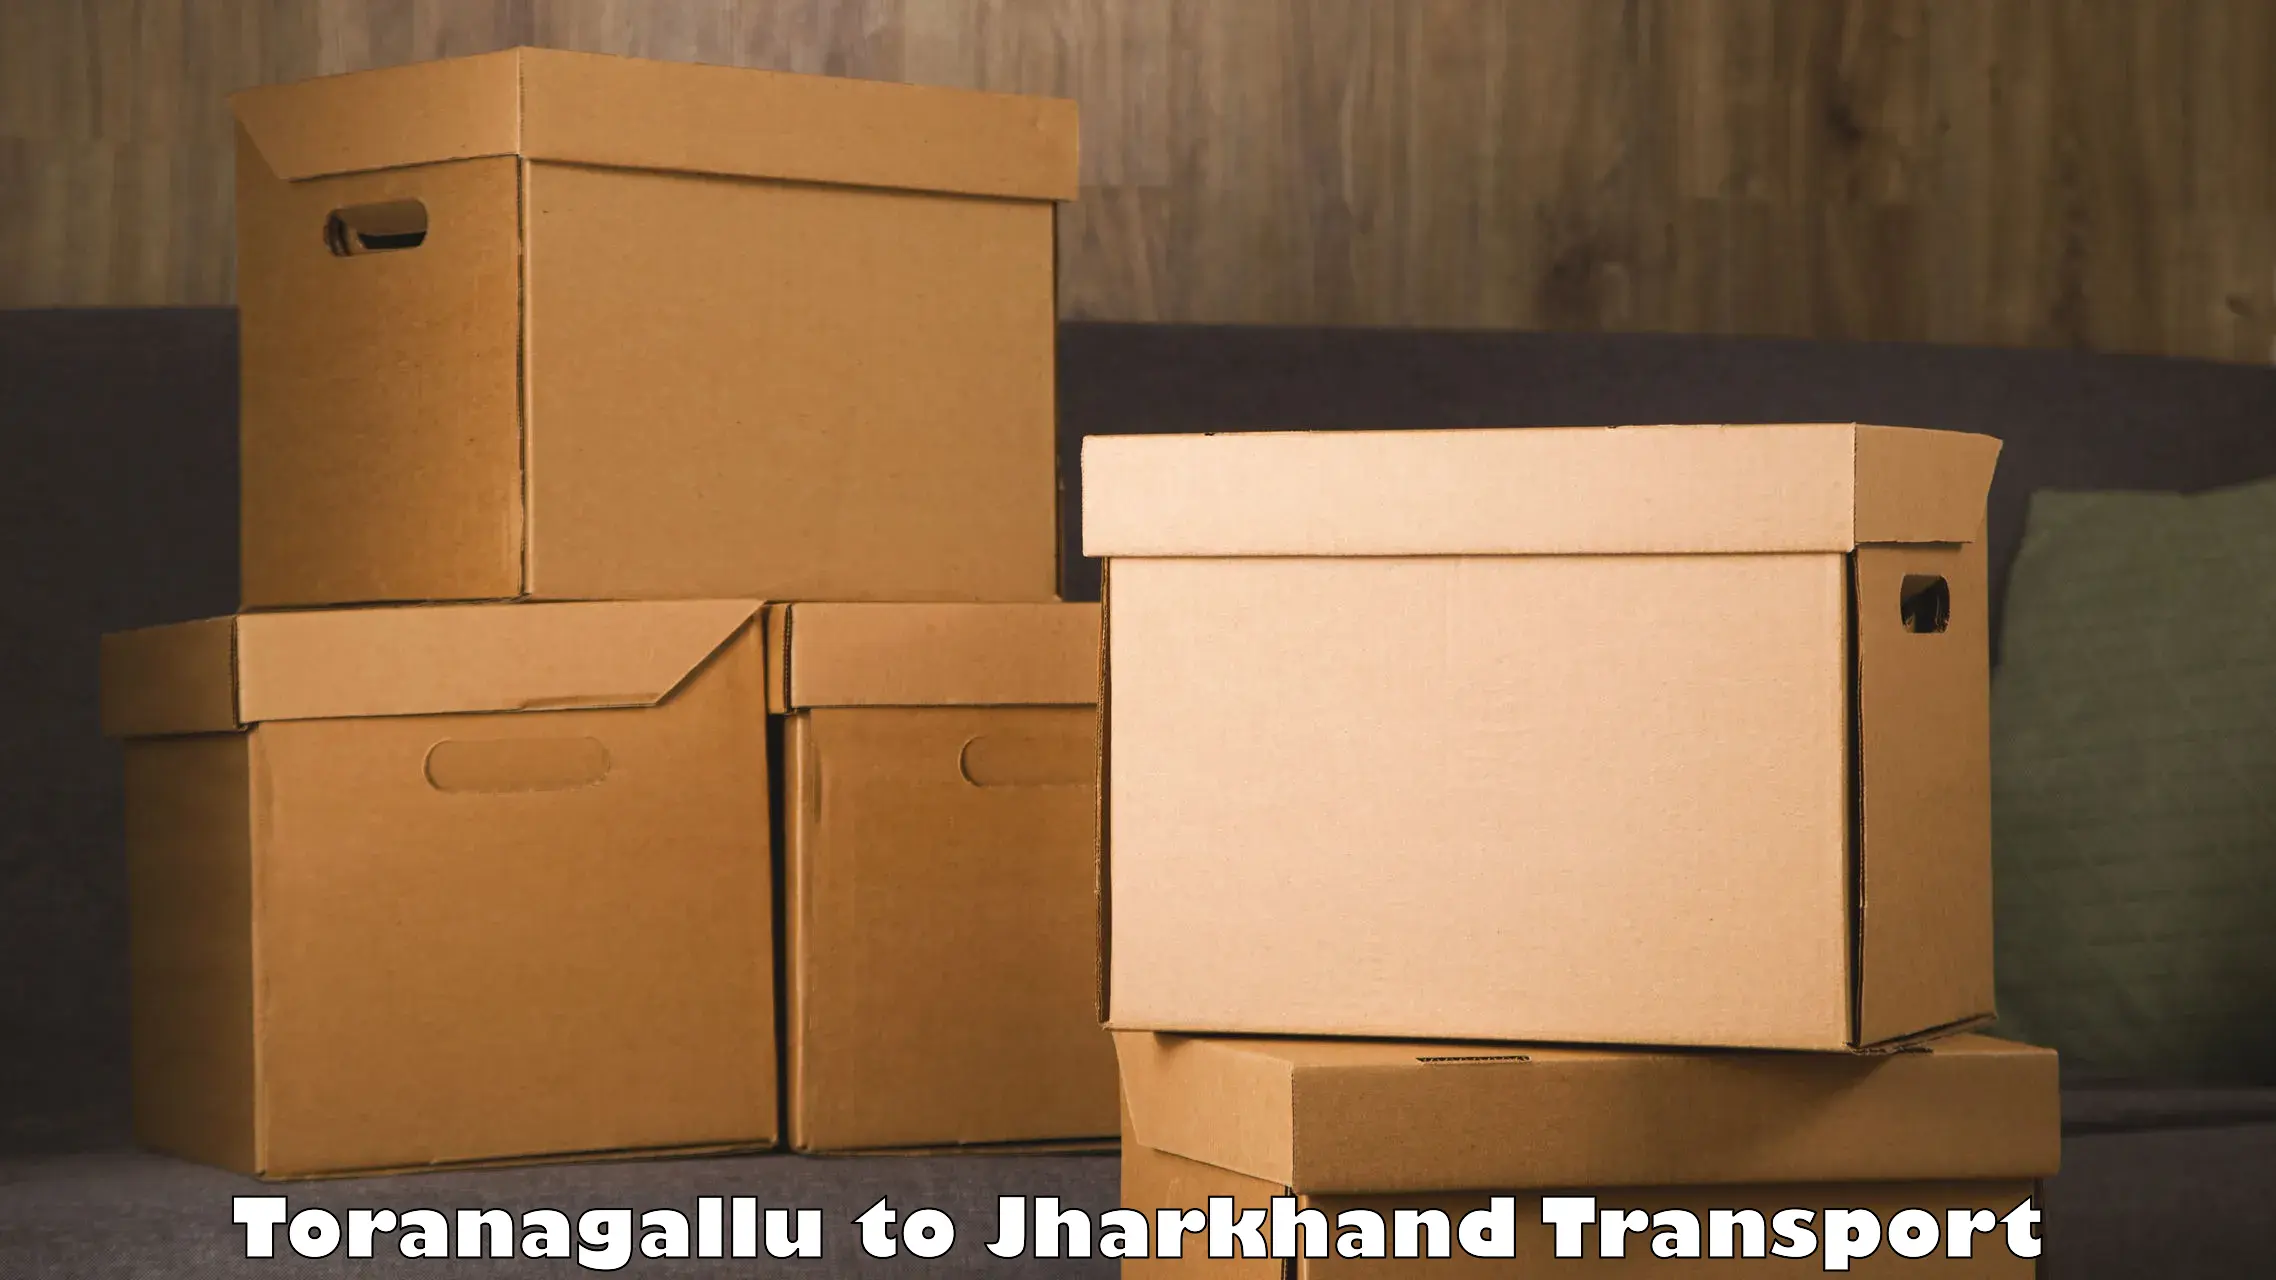 Online transport service Toranagallu to Medininagar